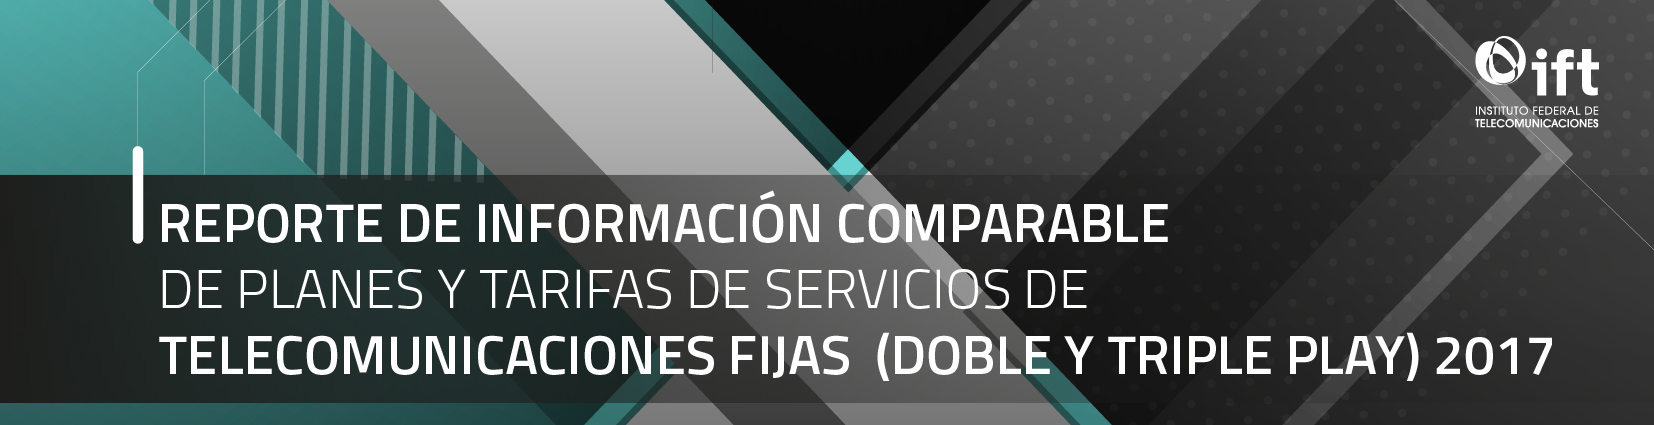 Reporte de Información Comparable de Planes y Tarifas de Servicios de Telecomunicaciones Fijas (Doble y Triple Play) 2017